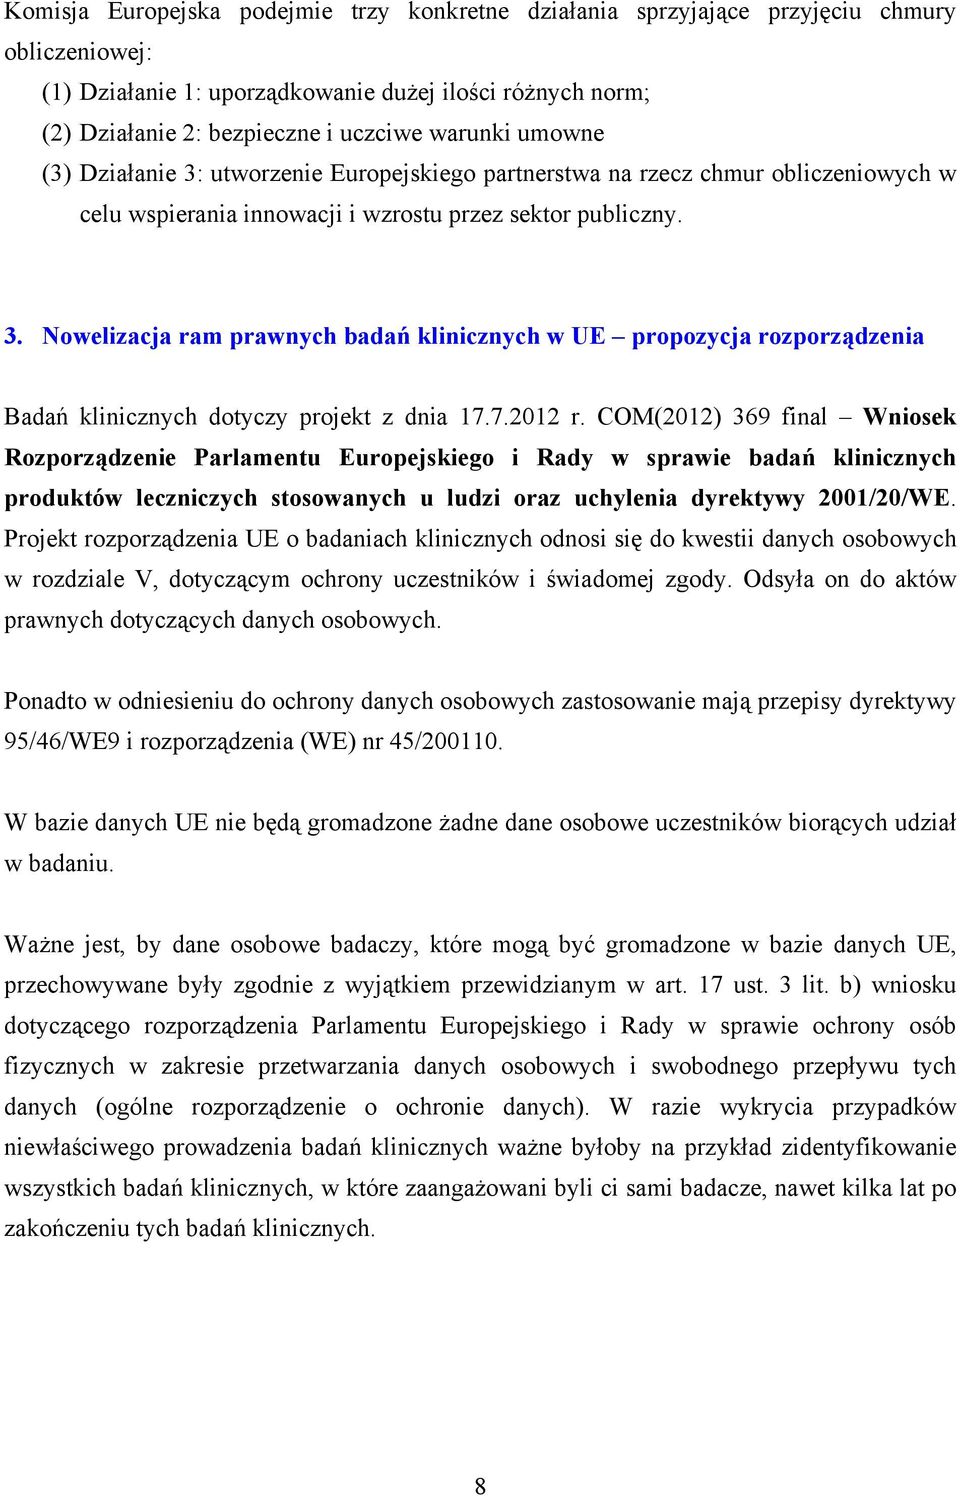 7.2012 r. COM(2012) 369 final Wniosek Rozporządzenie Parlamentu Europejskiego i Rady w sprawie badań klinicznych produktów leczniczych stosowanych u ludzi oraz uchylenia dyrektywy 2001/20/WE.